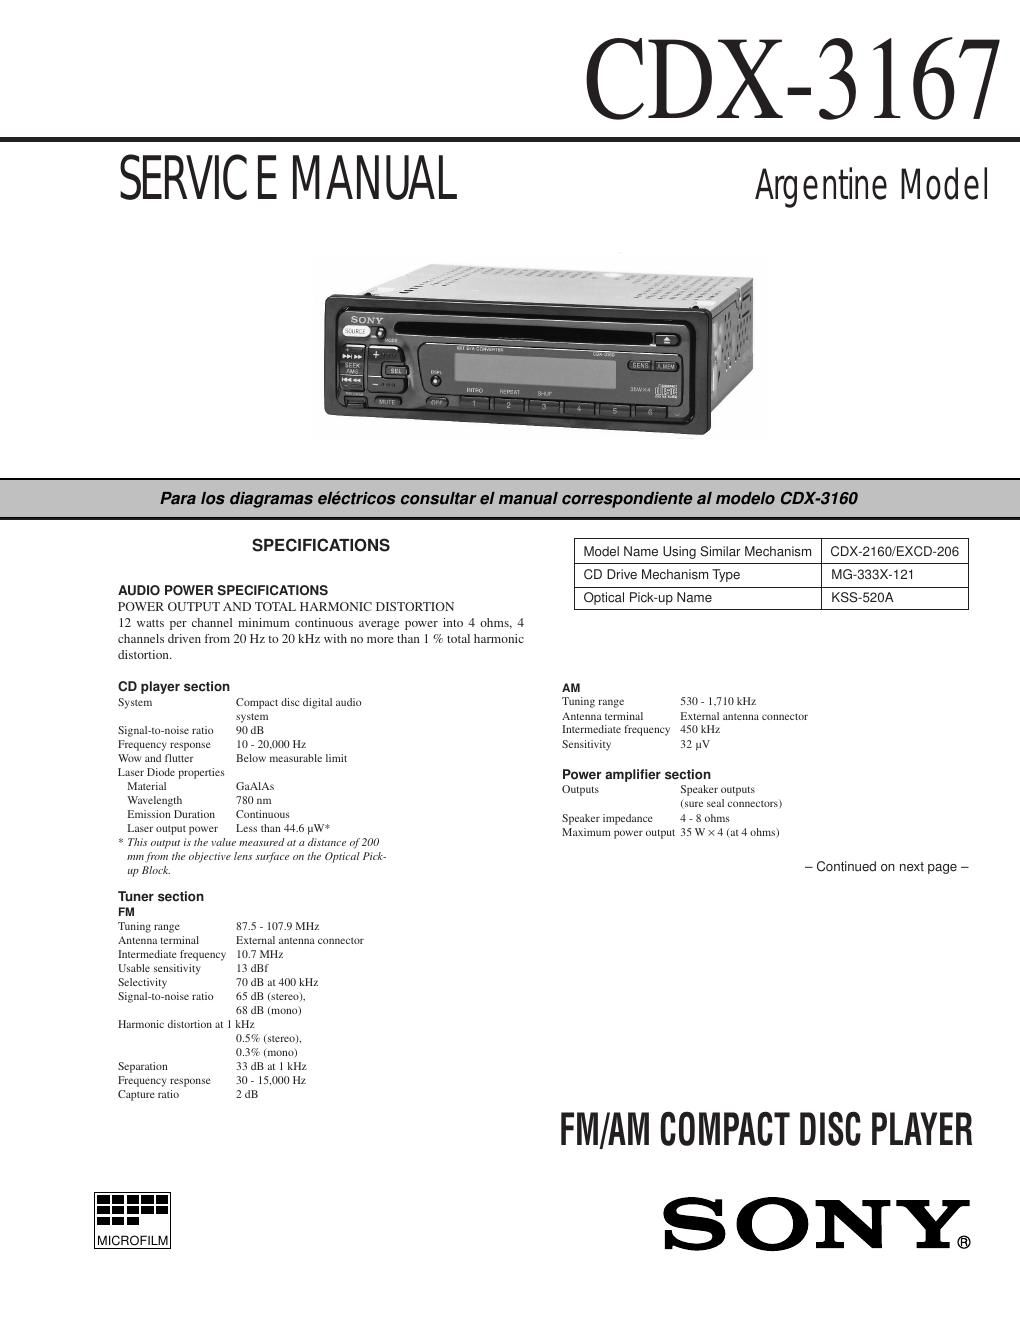 sony cdx 3167 service manual